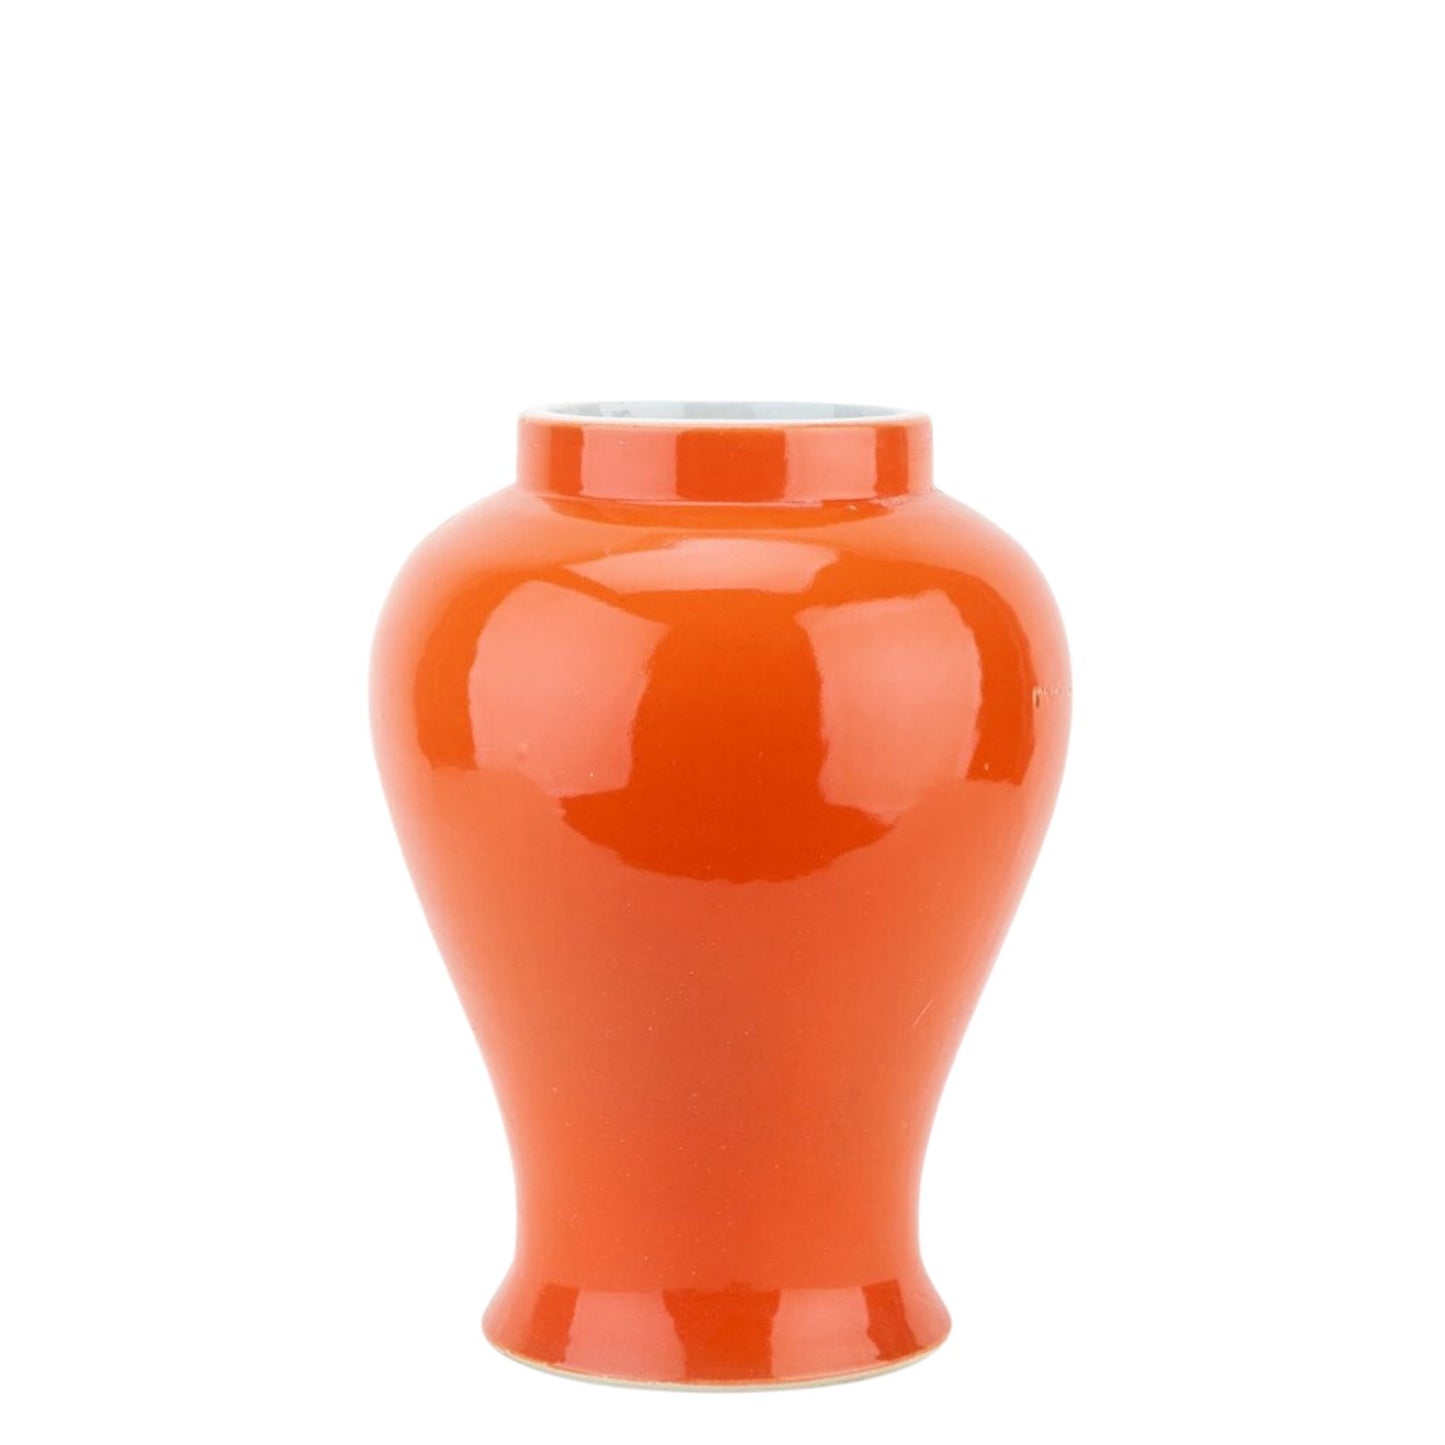 NEW - Tangerine Orange, 16" Tall Porcelain Ginger Jar